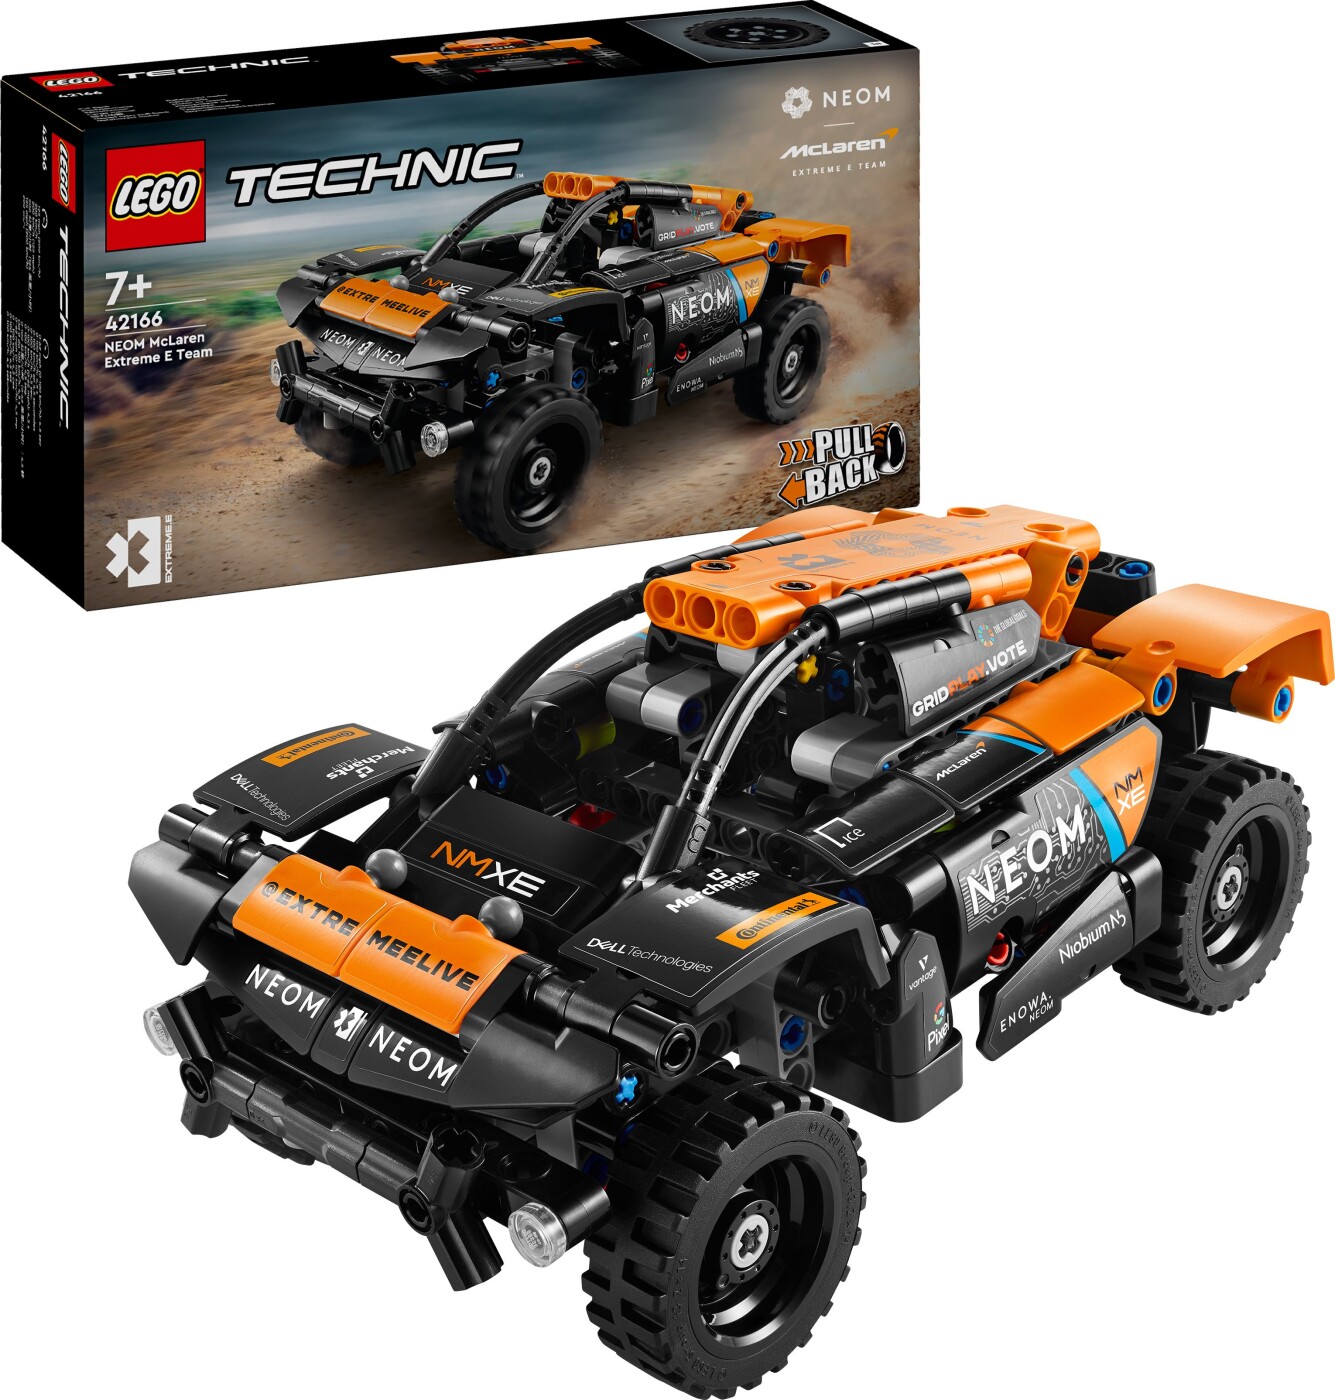 Billede af Lego Technic - Neom Mclaren Extreme E-racerbil - 42166